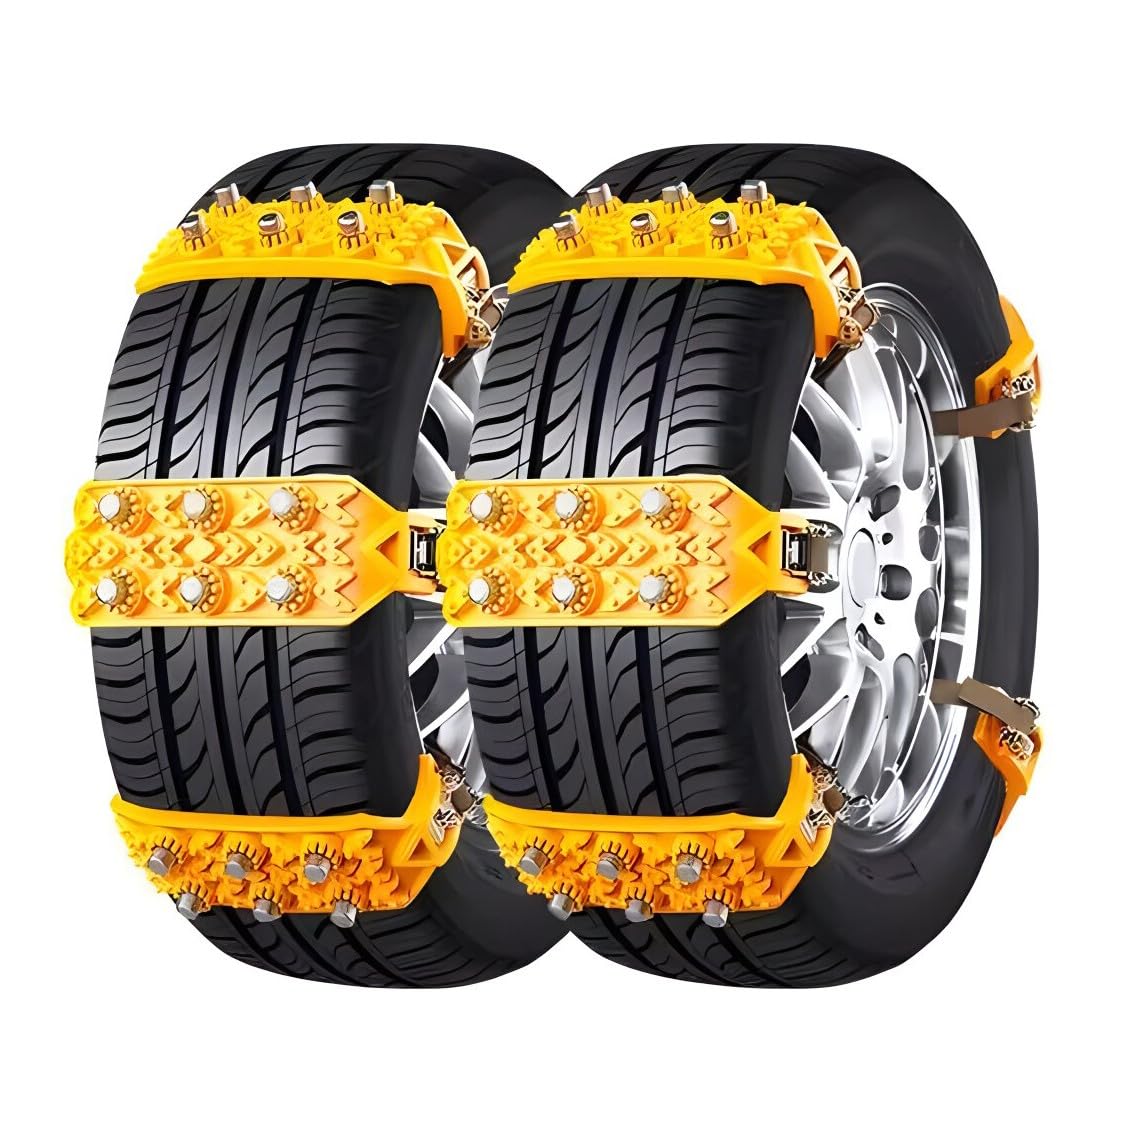 Auto-Schneeketten für Daewo𝘰 Nubira III,Schneereifen Ketten,Rutschfeste, verstellbare ReifenkettenNotfalllösung Traktionsketten 10-teiliges von Generic